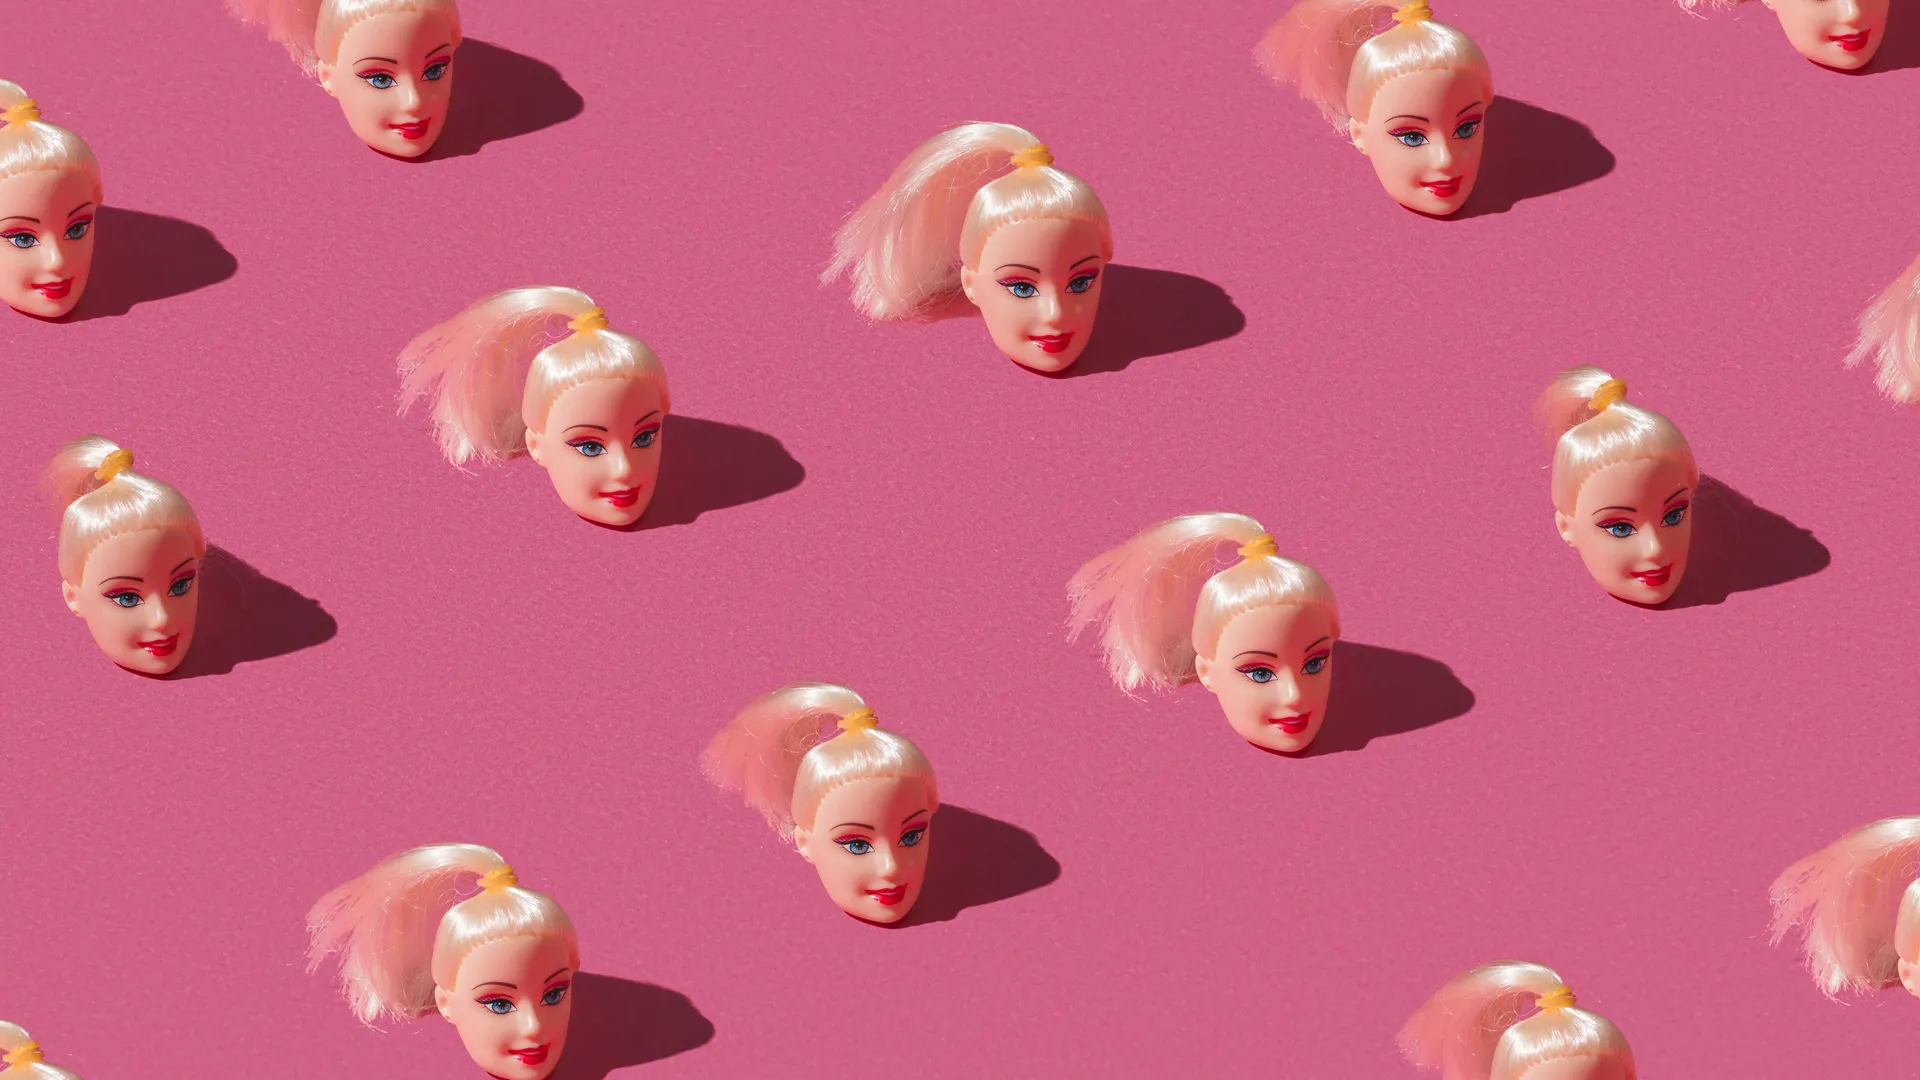 La estrategia de marketing de "Barbie" se extiende a otras marcas